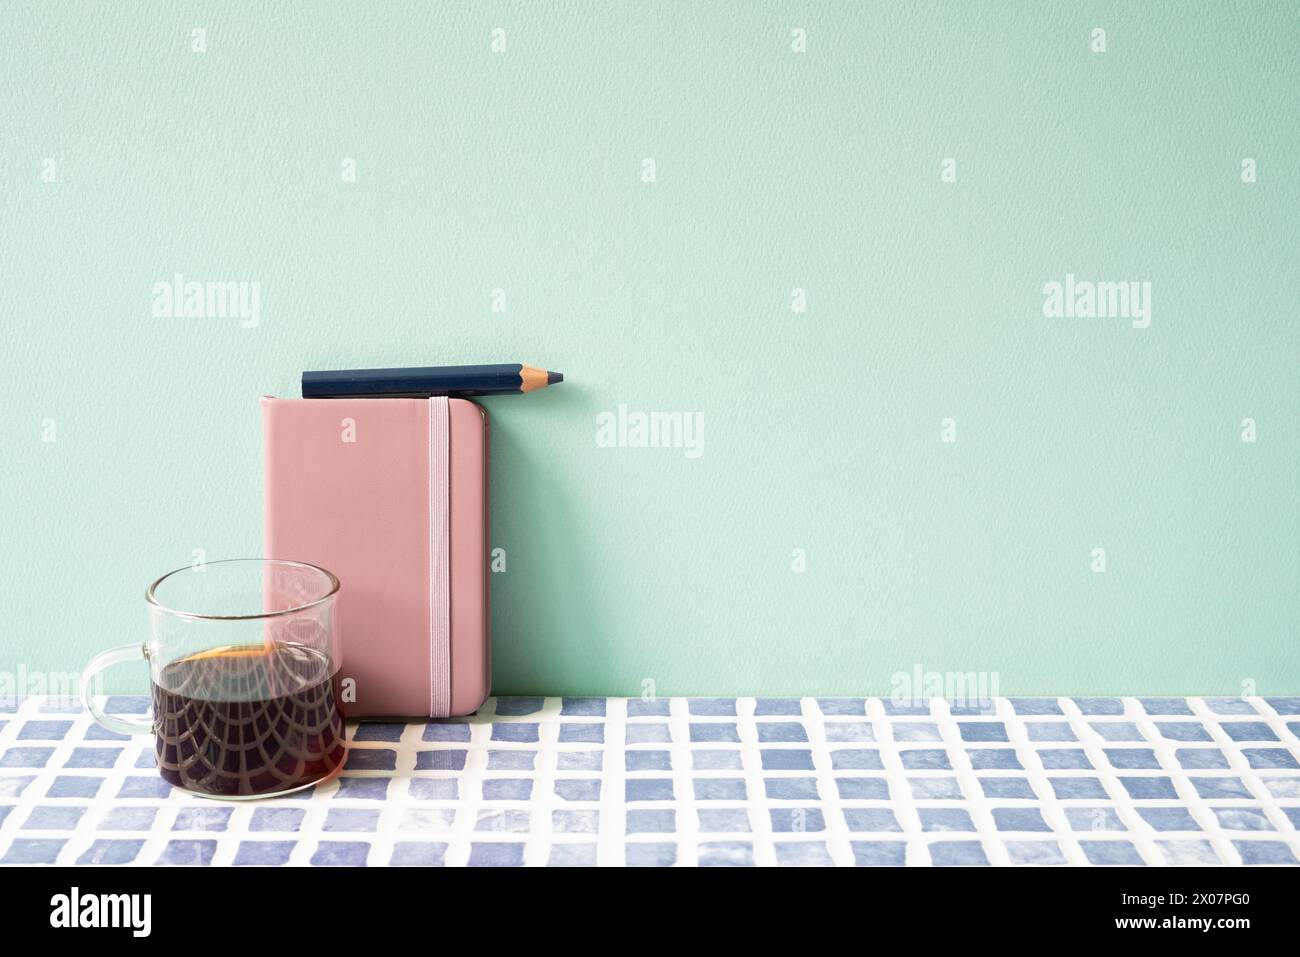 Tagebuch-Notizbuch, Bleistift, Kaffee auf blau gefliestem Schreibtisch. Mint. Wandhintergrund. Arbeitsbereich Stockfoto